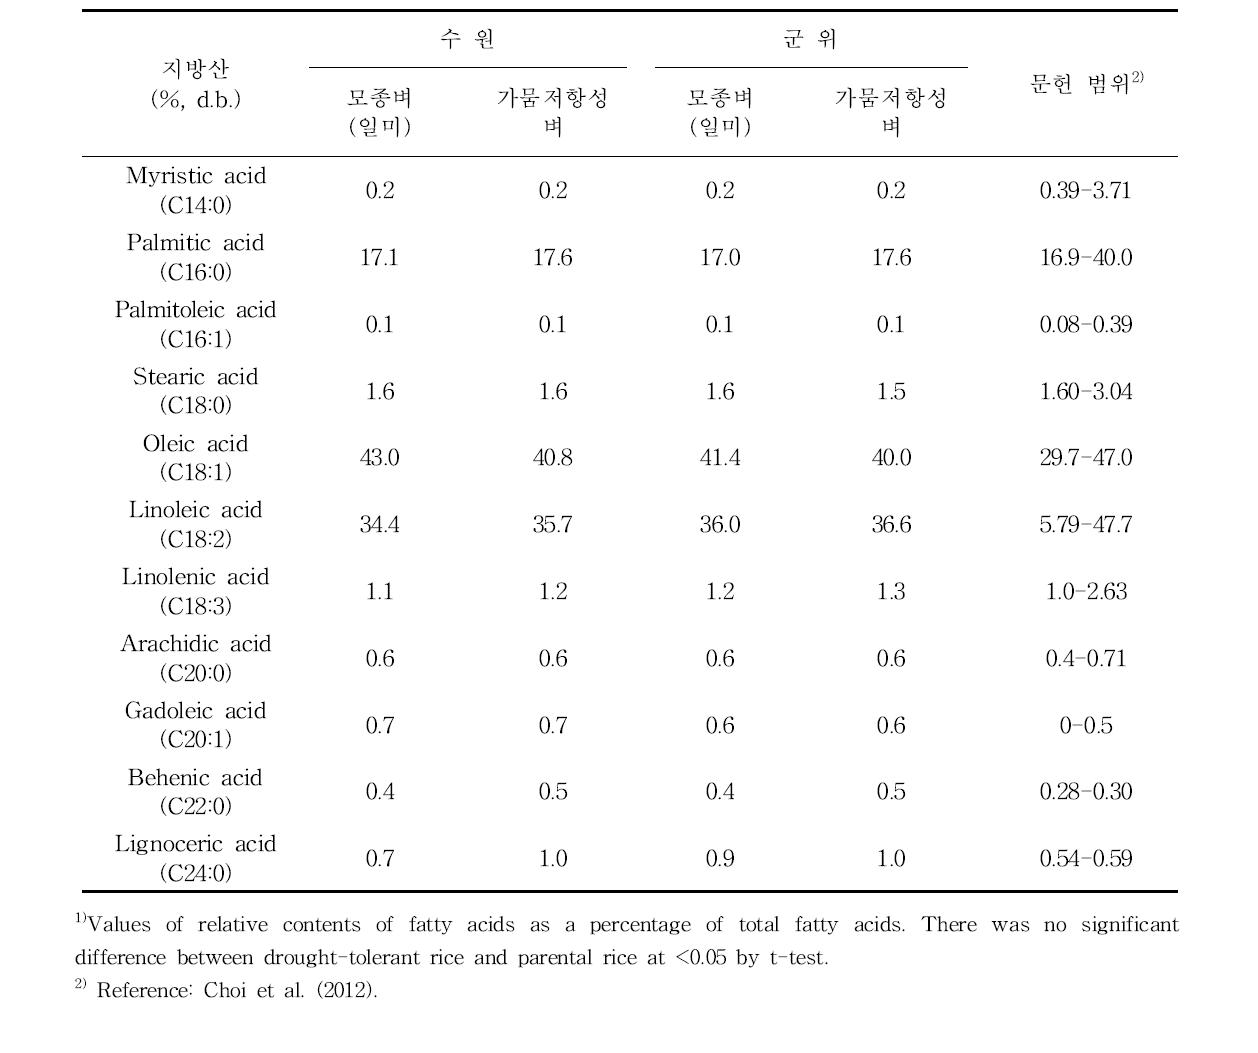 가뭄저항성 벼와 모종벼 현미의 지방산 조성 (%, d.b.)